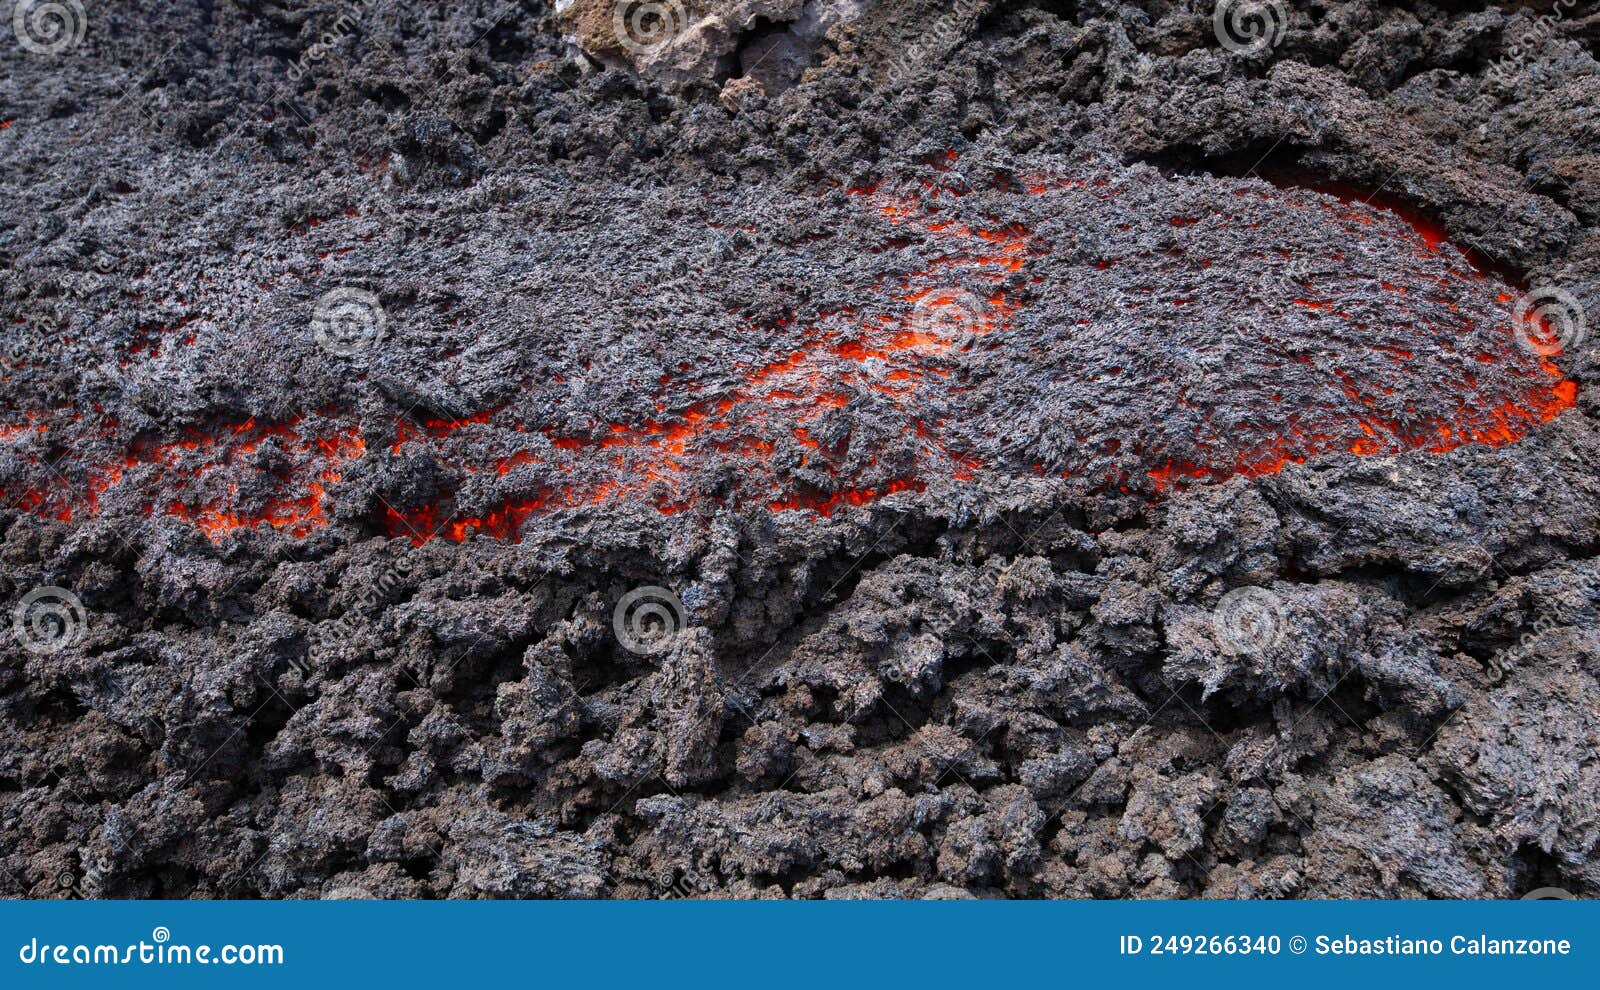 colata di lava in dettaglio - etna,sicilia